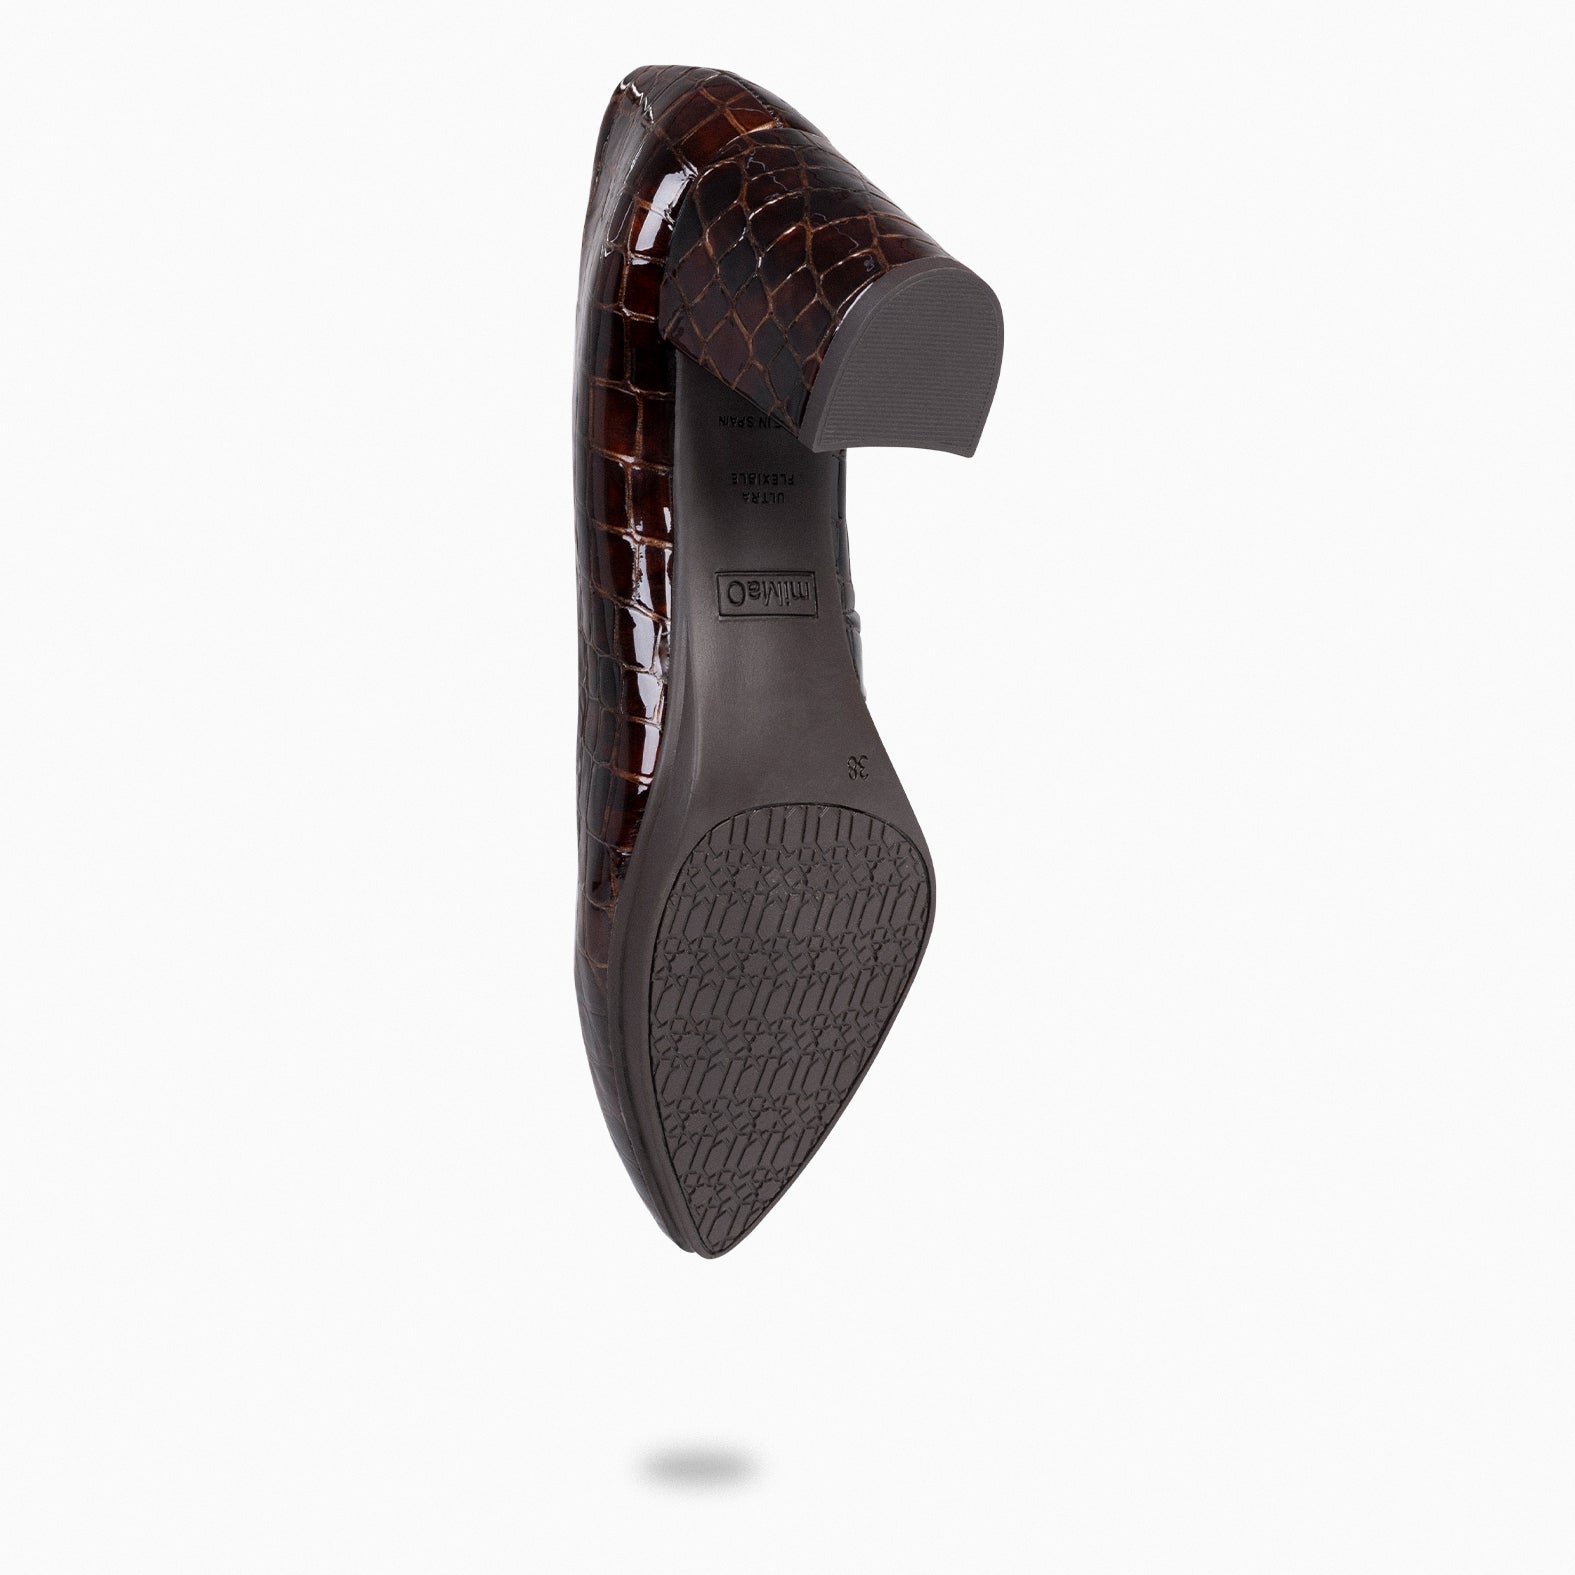 URBAN S COCO – Zapatos de tacón con textura de cocodrilo CAFÉ